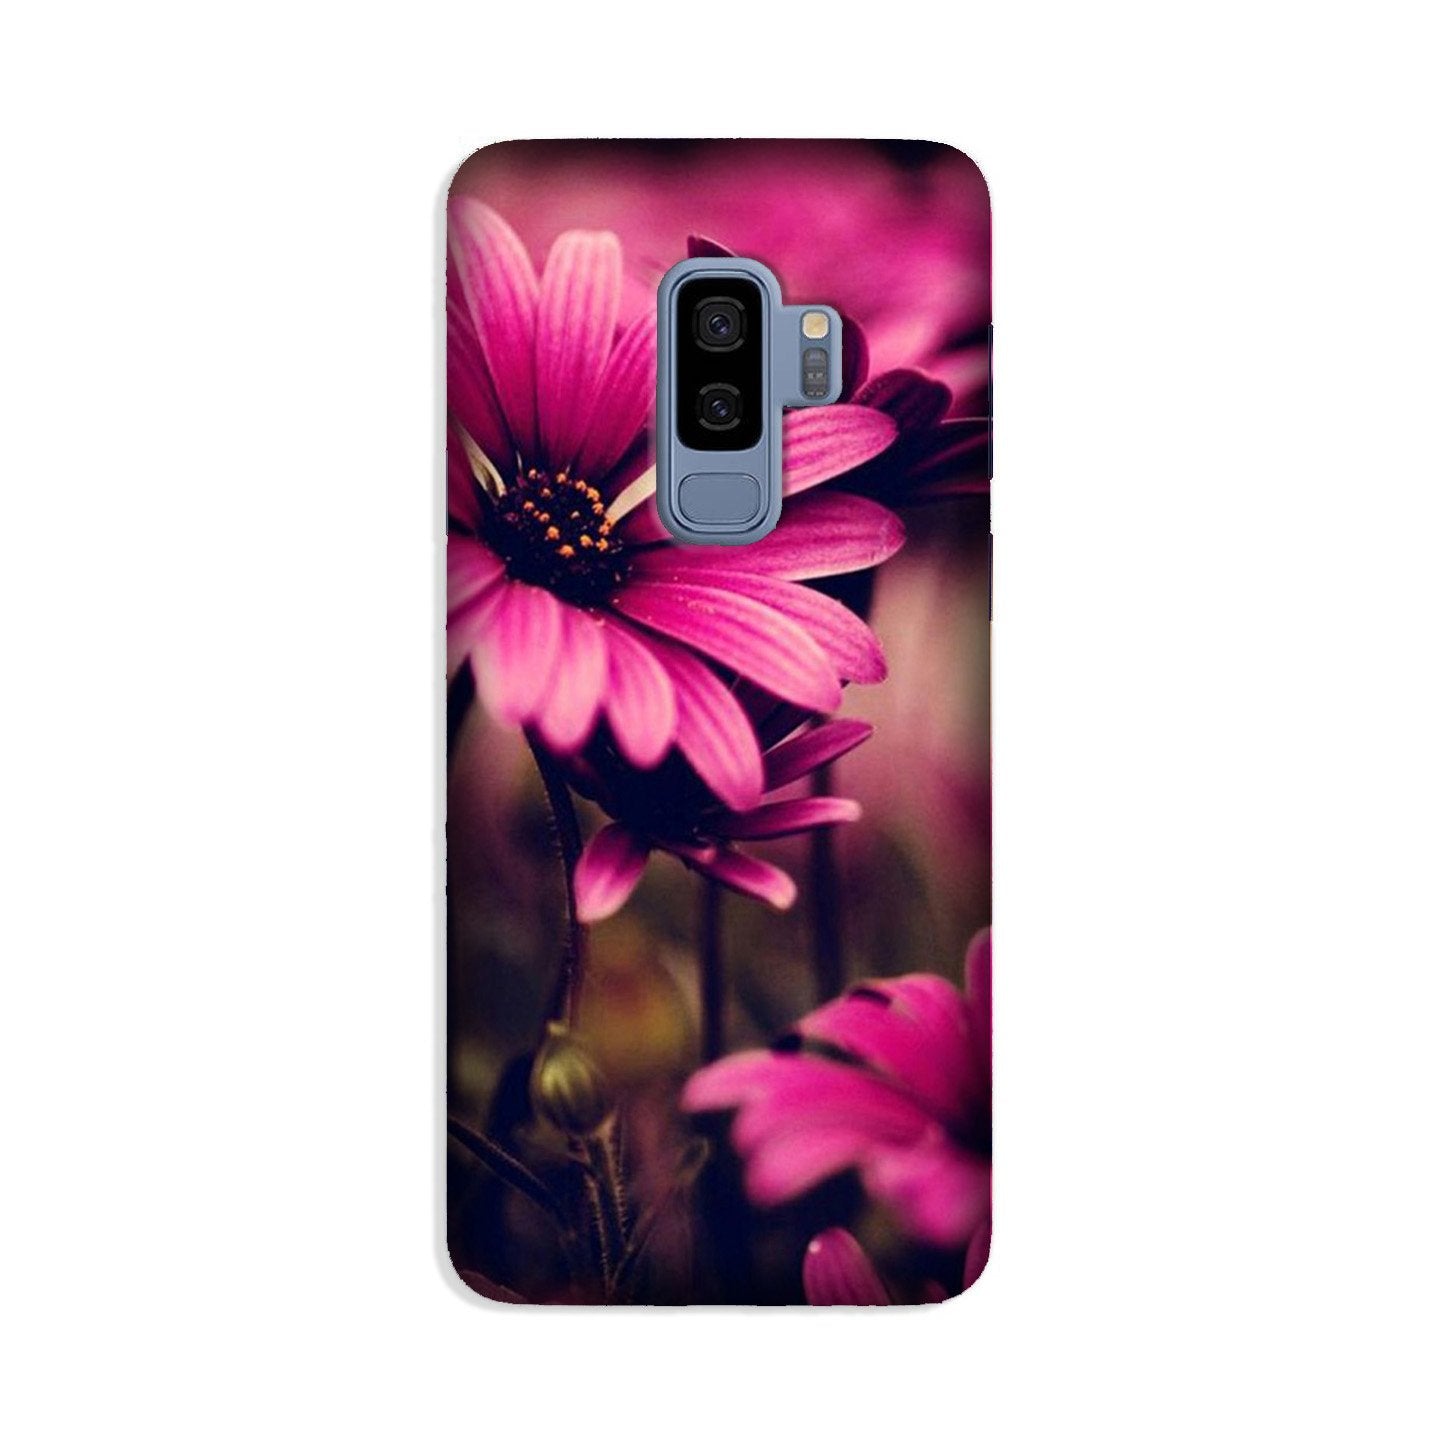 Purple Daisy Case for Galaxy S9 Plus